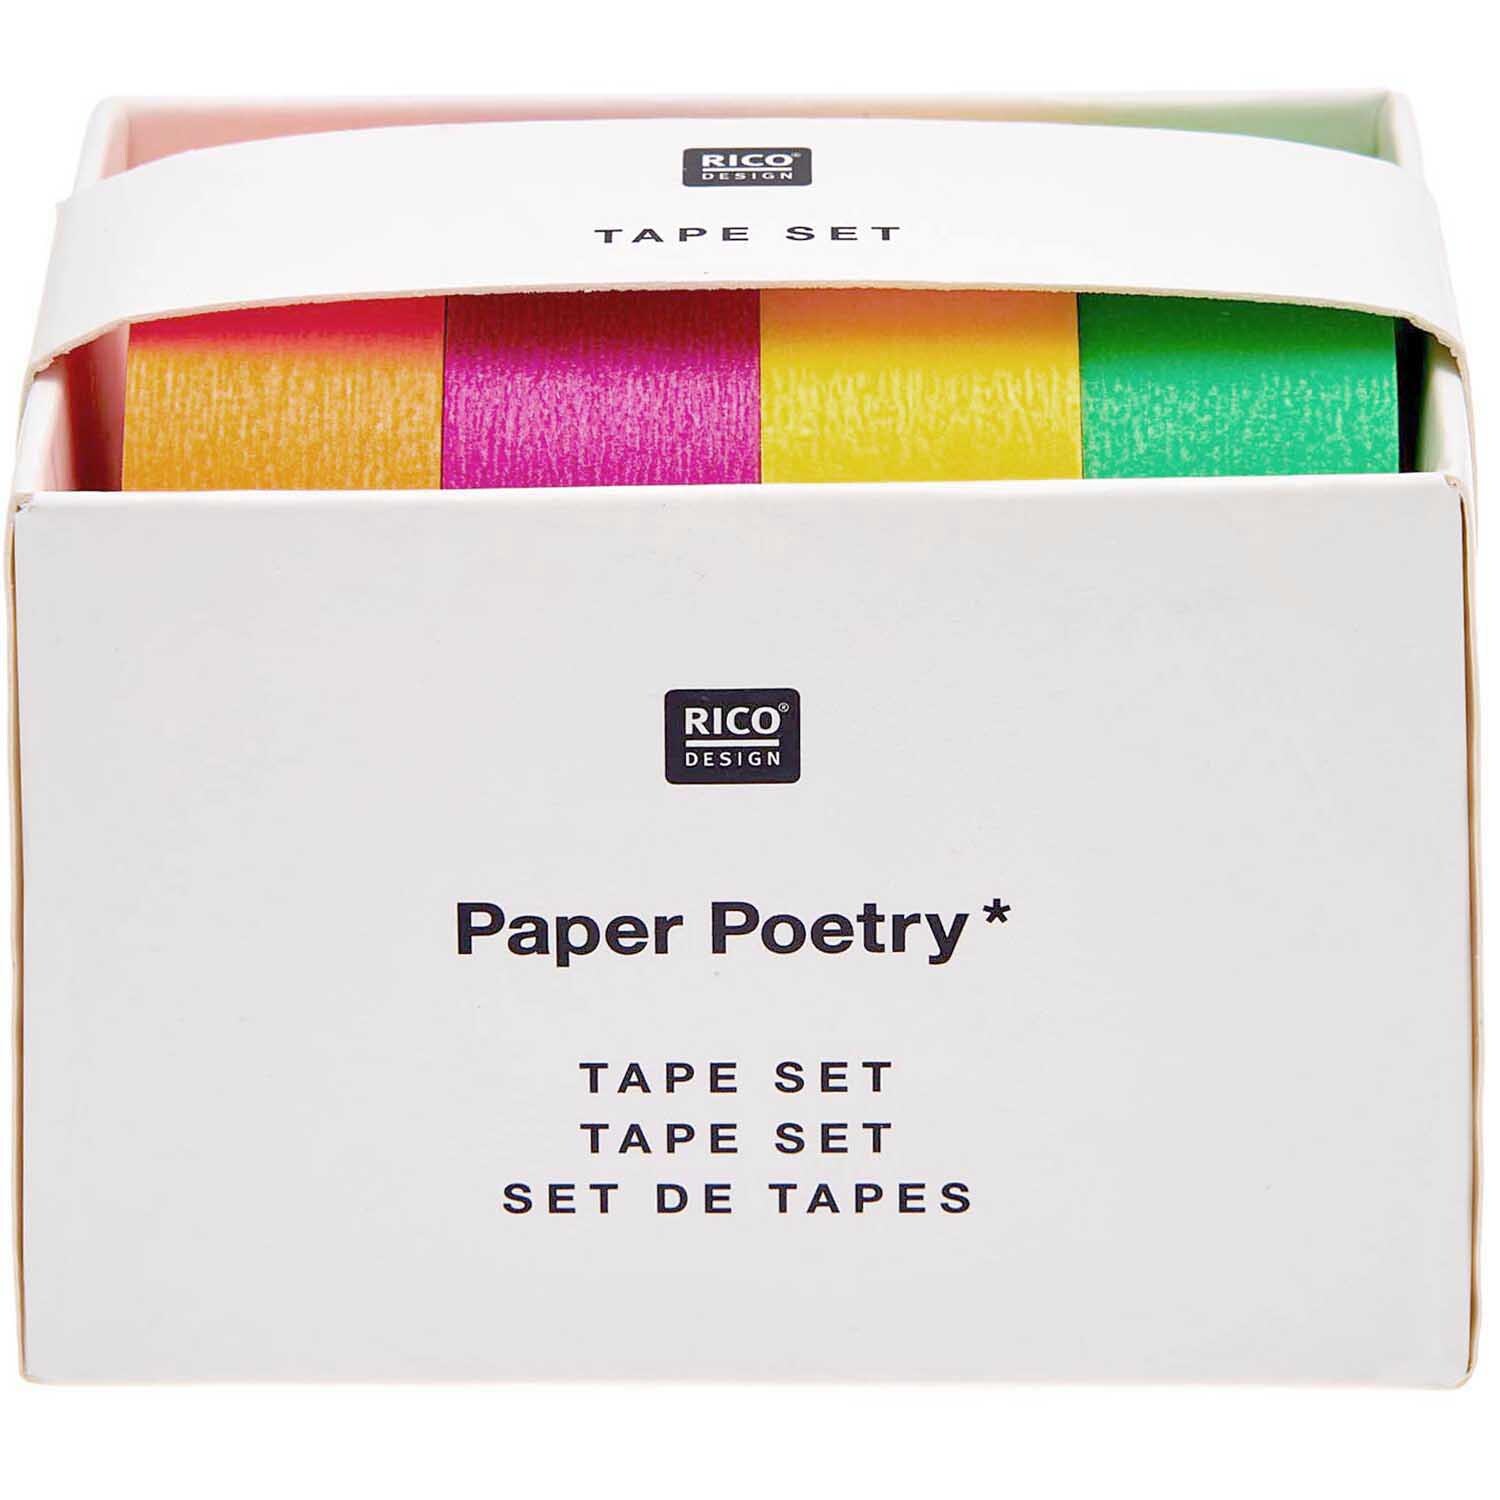 Paper Poetry Tape Set Neon klassisch 15mm 10m 4teilig